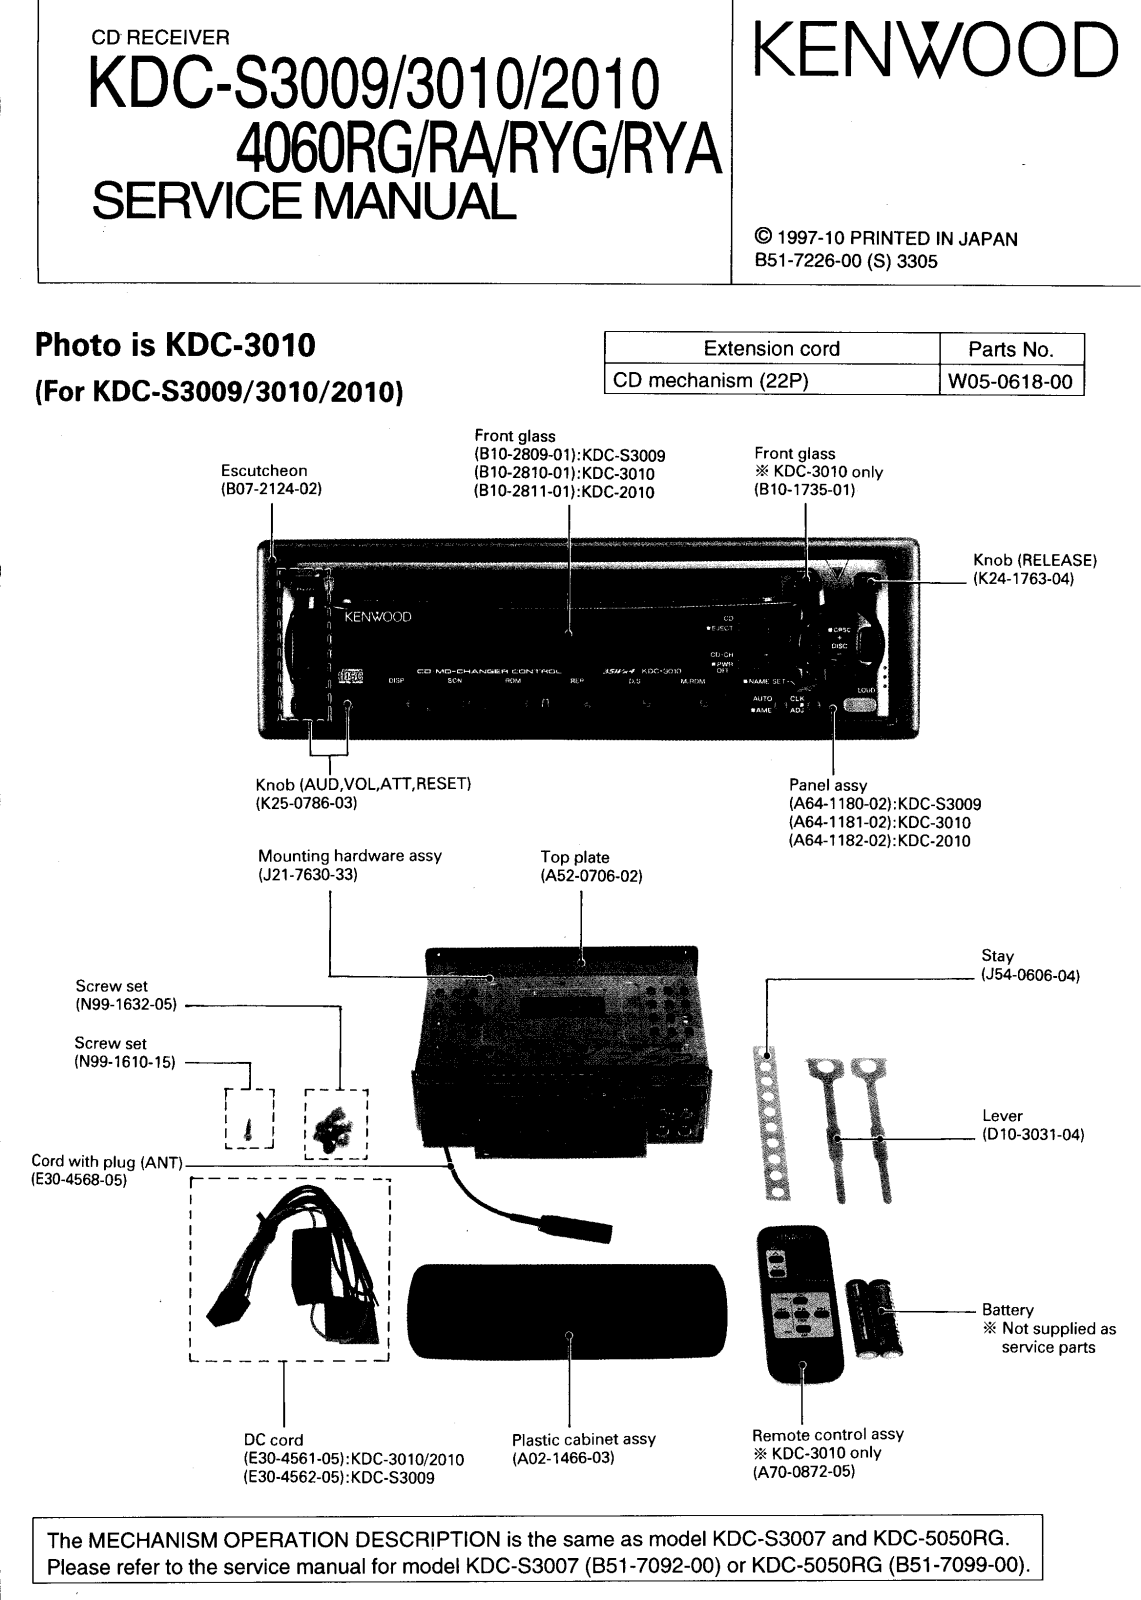 Kenwood KDCS-2010, KDCS-3009, KDCS-4060-RA, KDCS-3010, KDCS-4060-RG Service manual